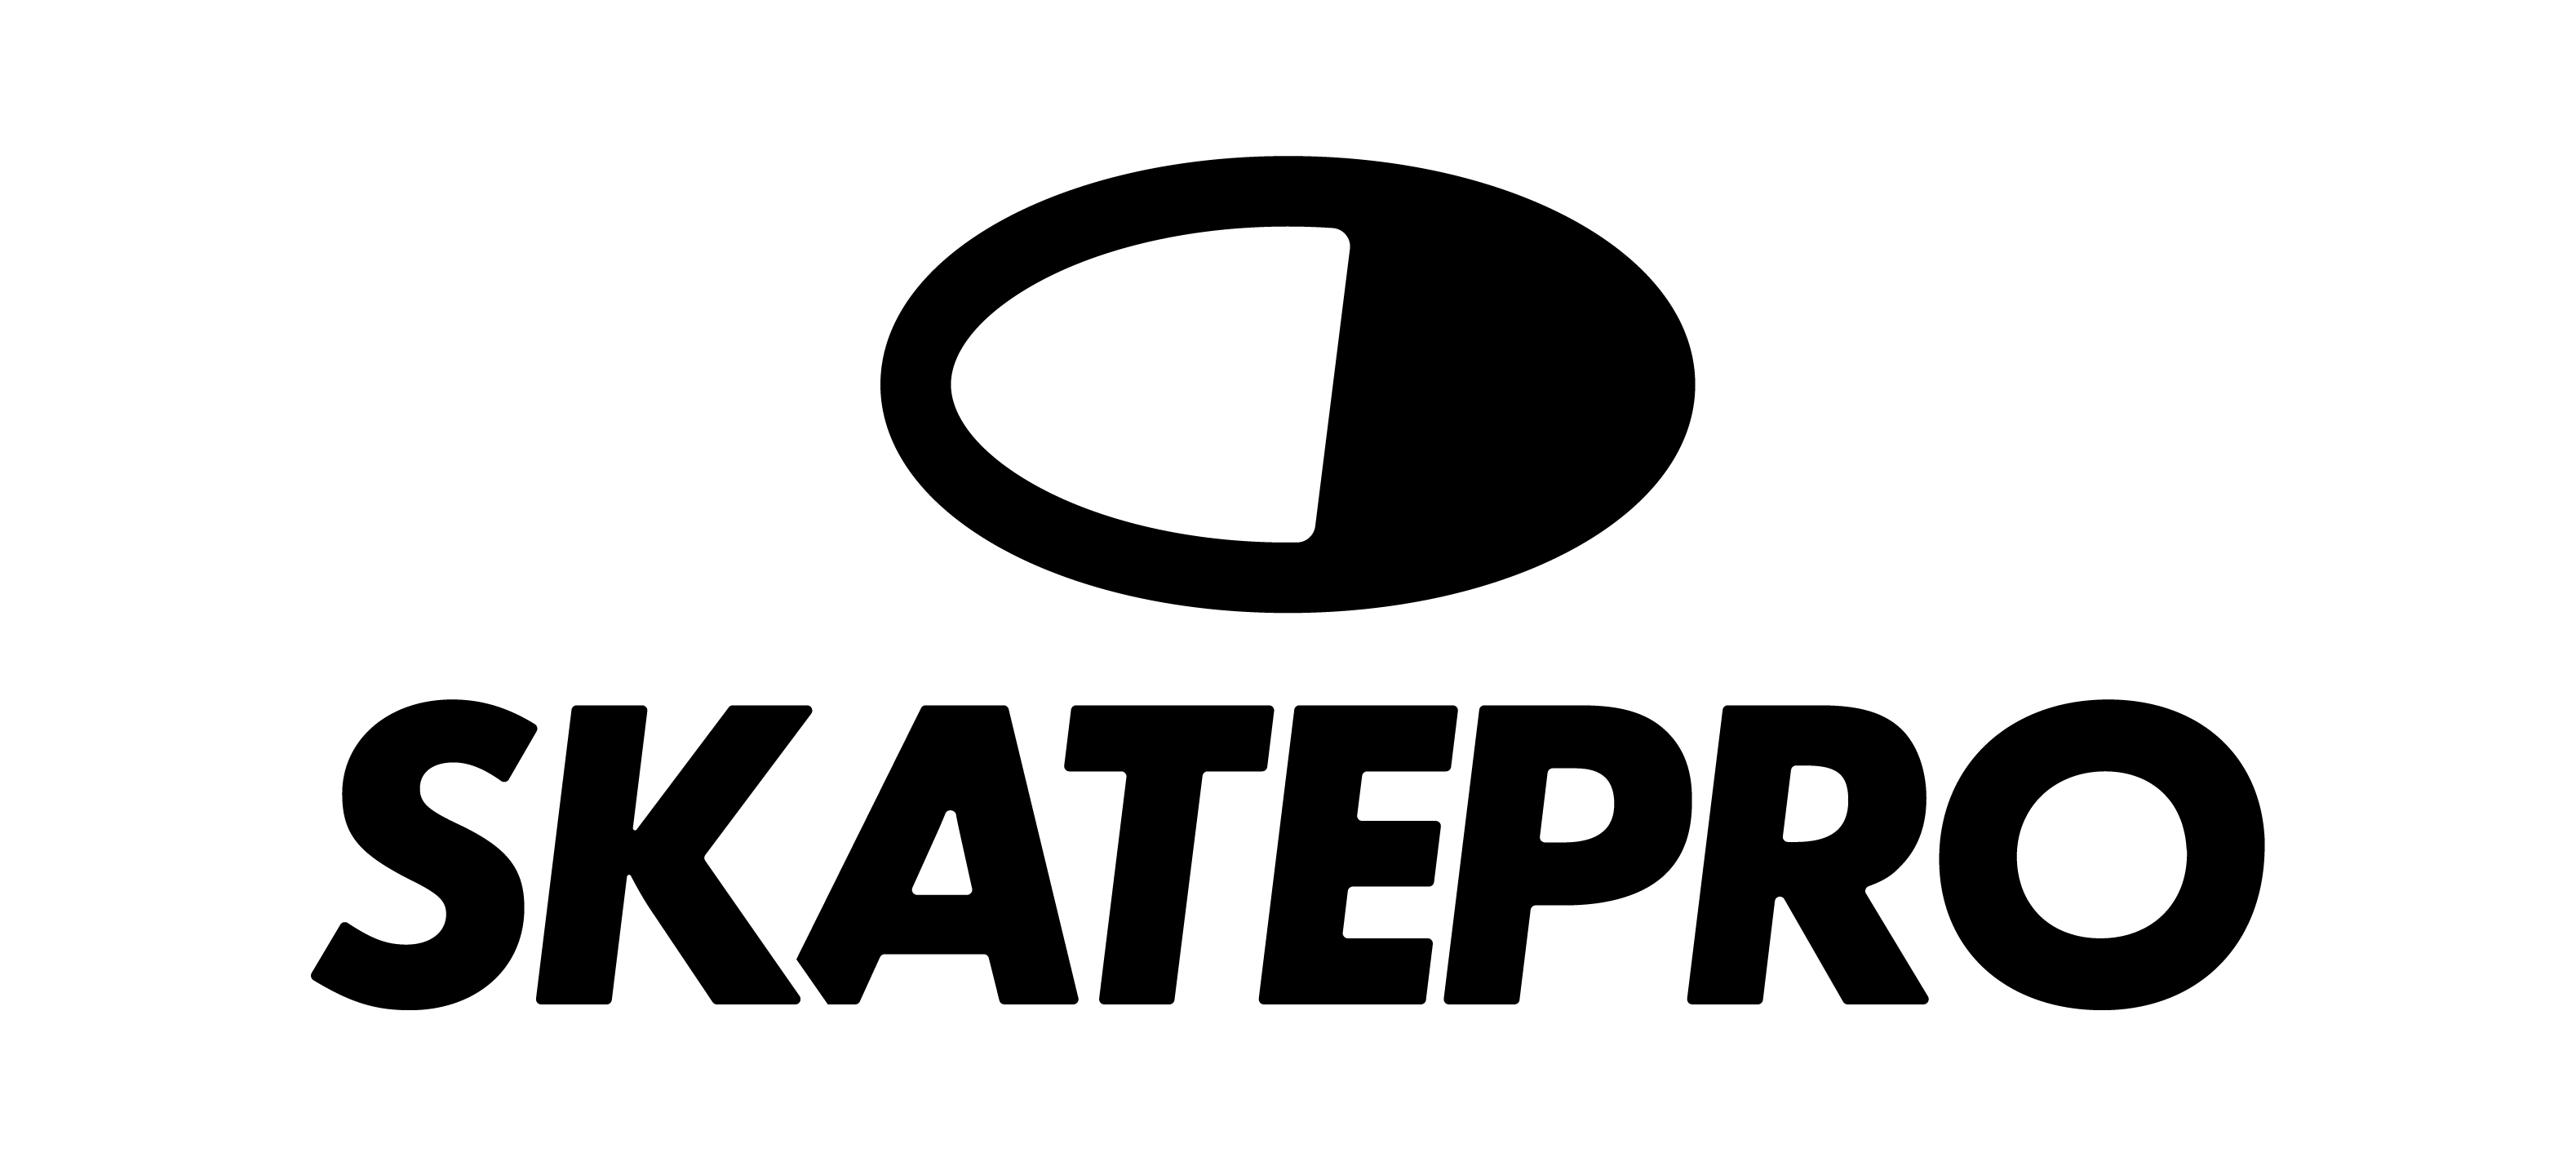 Skatepro_logo_main_2019_black